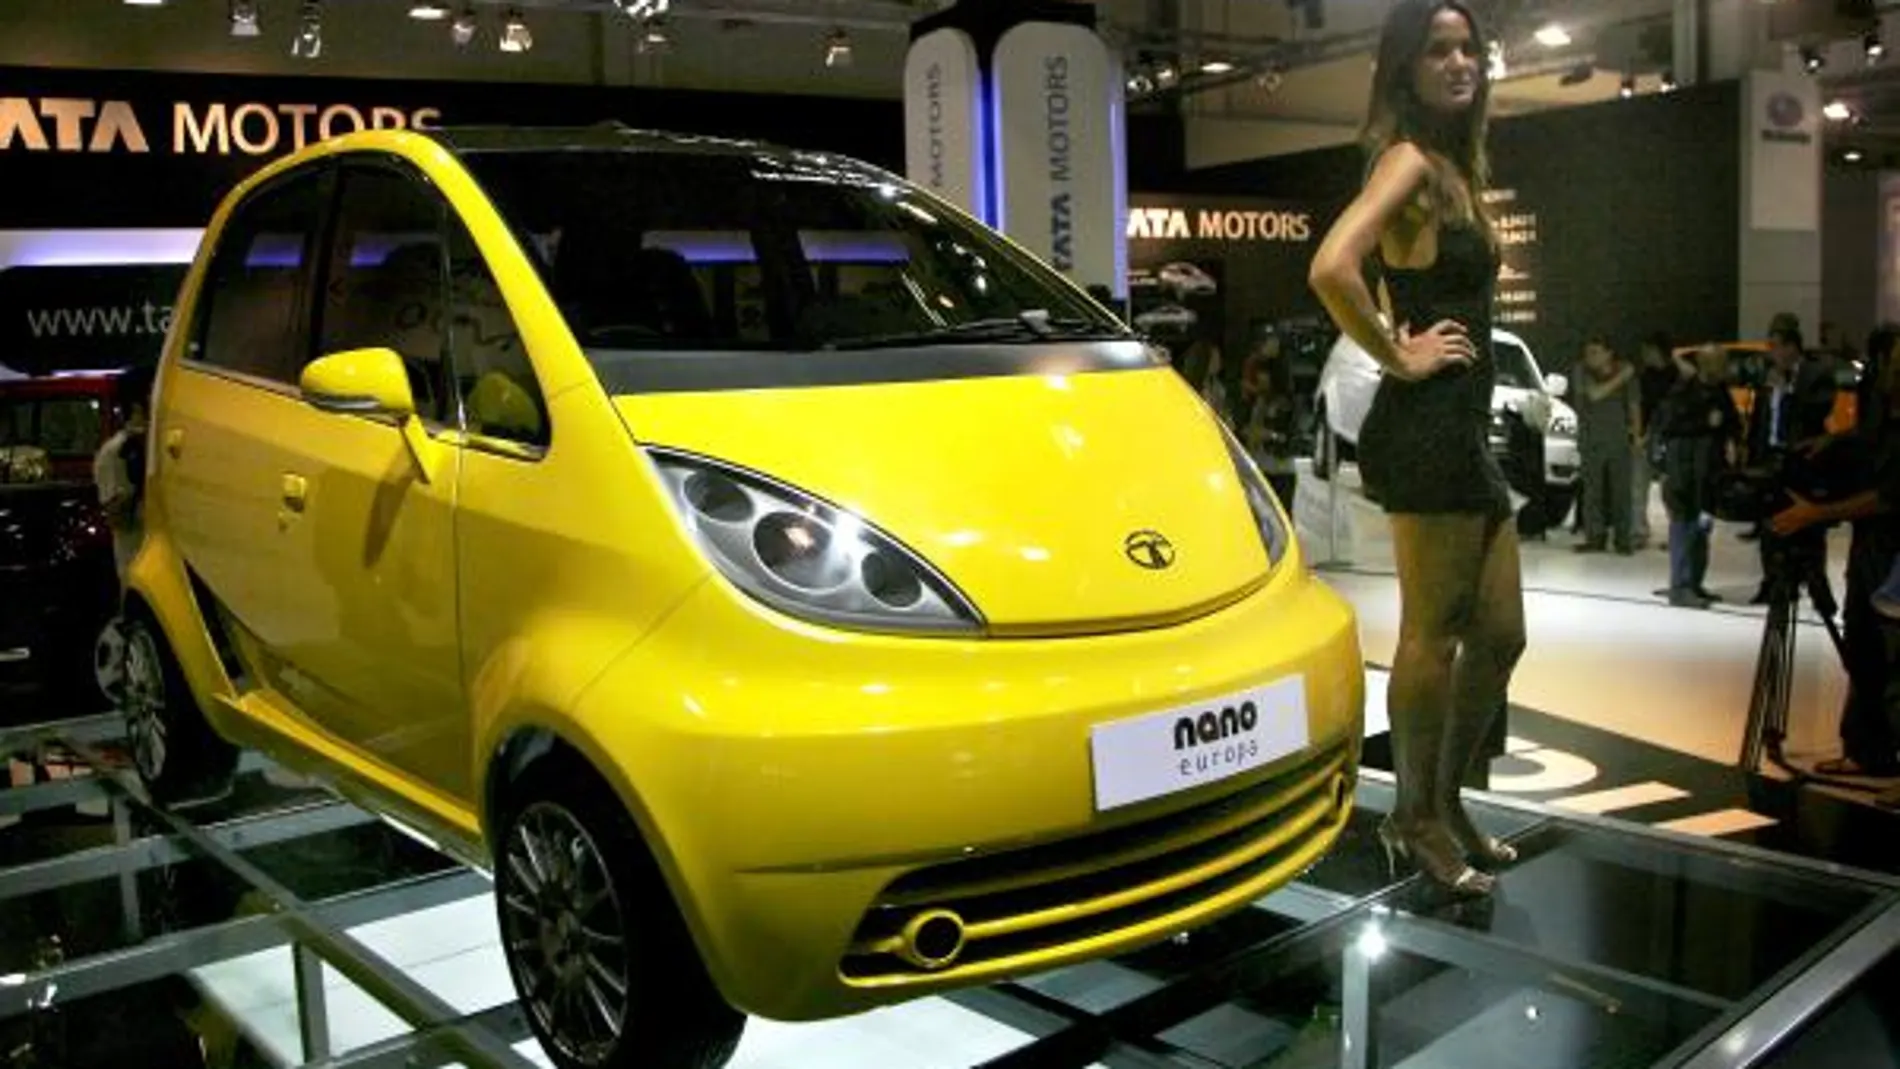 El Tata Nano llegará a Europa en 2011 y costará unos 3.500 euros